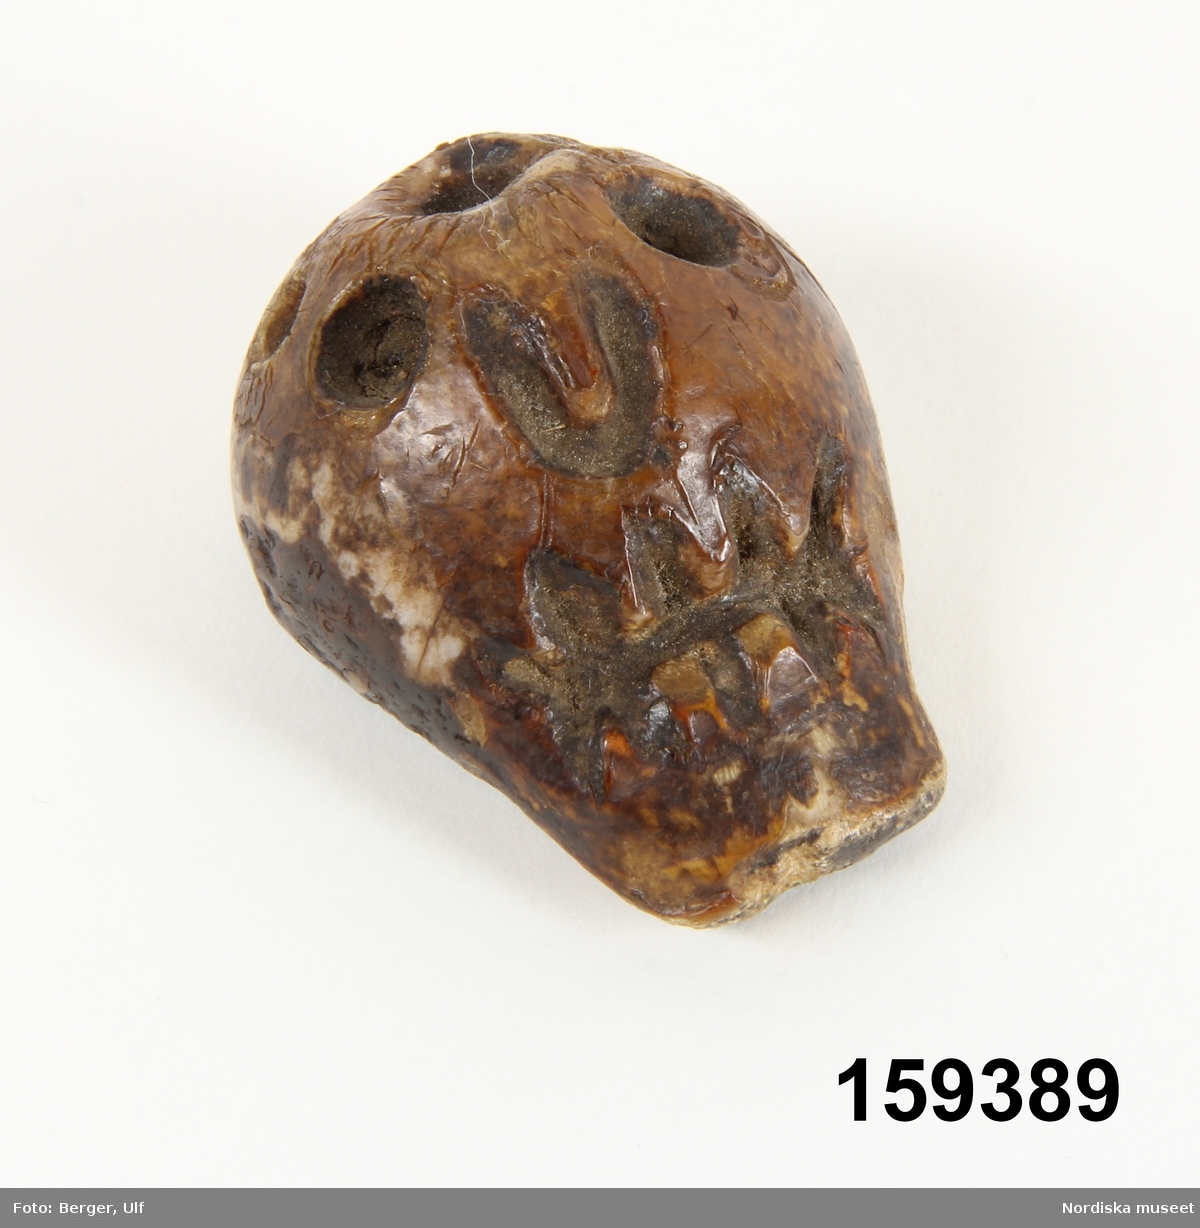 Enligt undersökning utförd 2003-11-03 av osteolog Rita Larje
är föremålet "karvad ur en ledkula från ett lårben av ko av nötboskap".
Lena Kättström Höök 2015-03-20